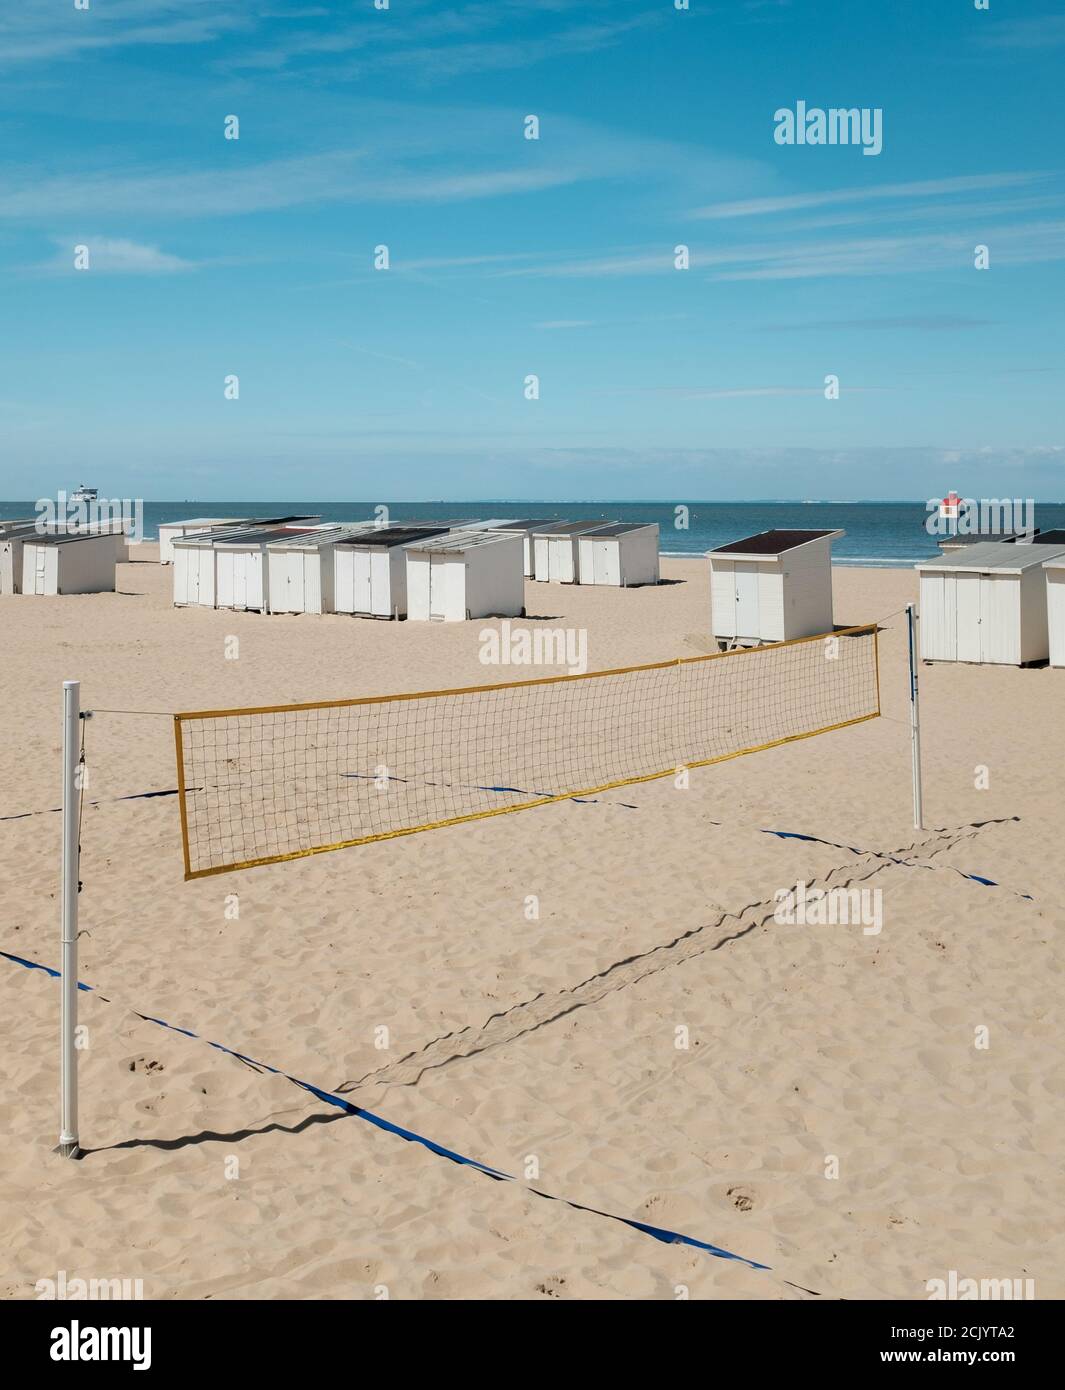 Terrain de volley-ball sur une plage vide à Calais, France Banque D'Images